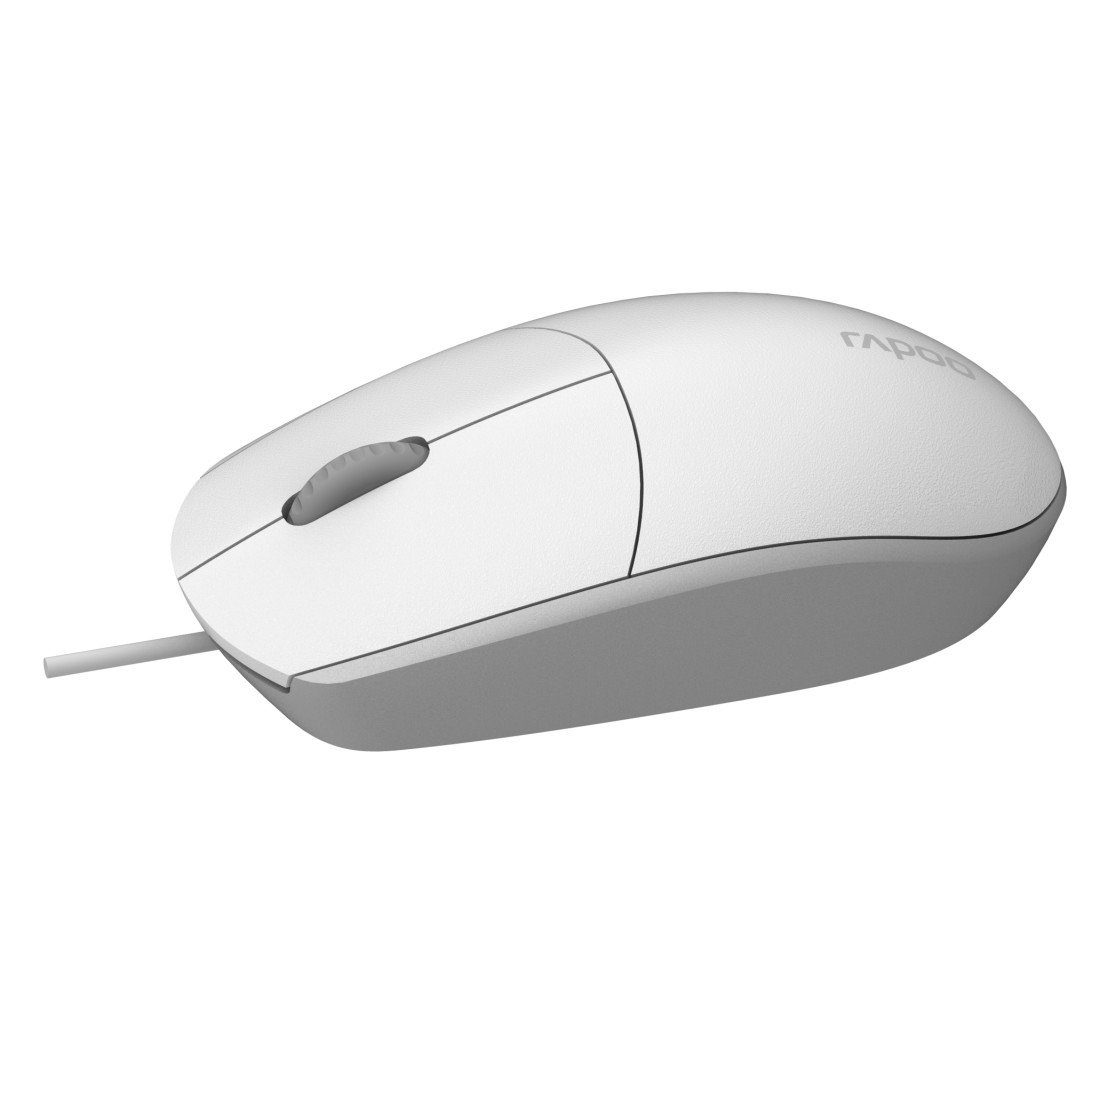 Rapoo N100 kabelgebundene Maus, 1600 weiß (kabelgebunden) Maus DPI